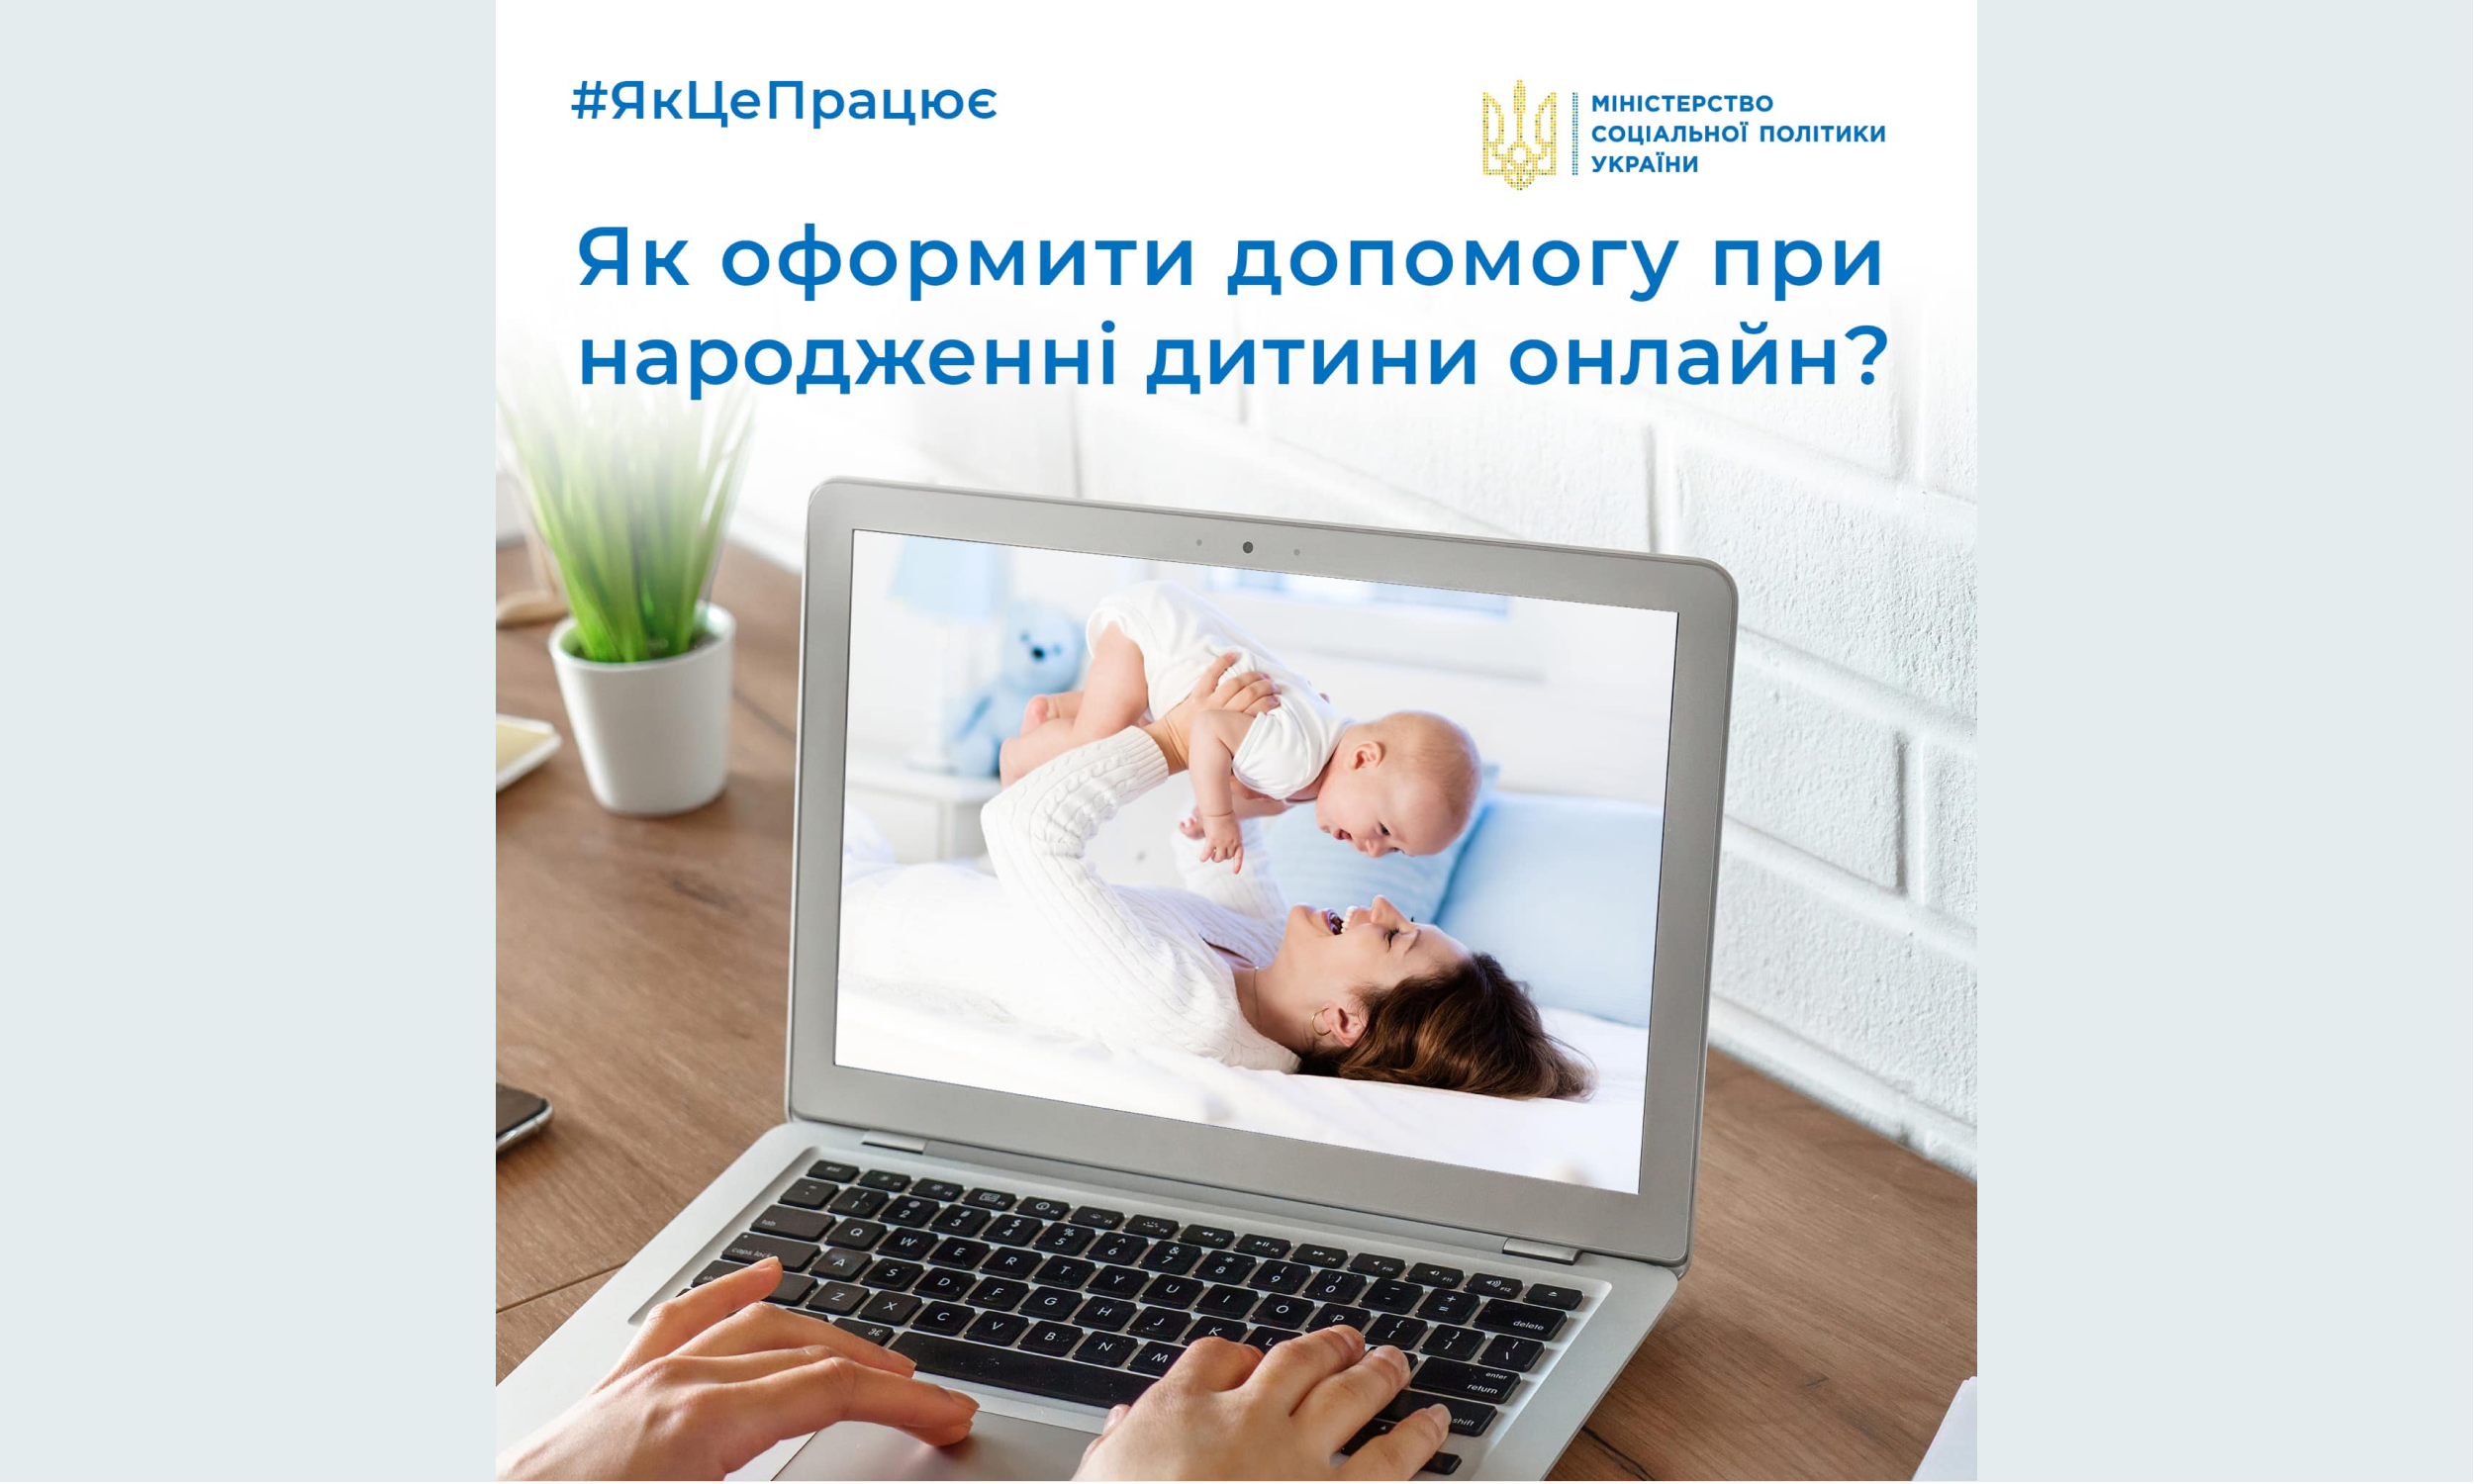 Міністерство соціальної політики України пояснює, як оформити допомогу при народженні дитини онлайн